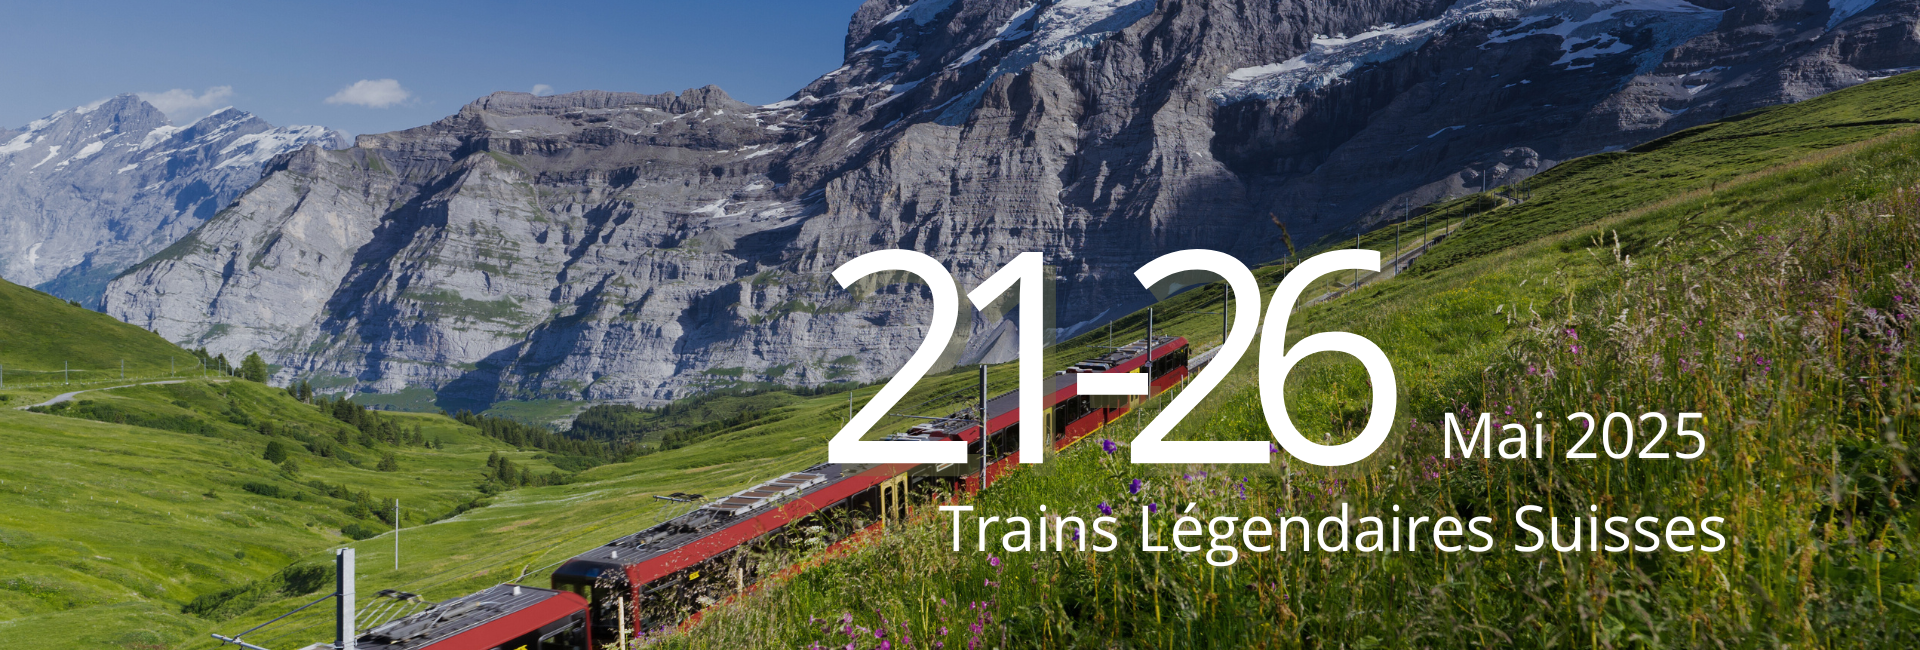 Trains légendaires suisses